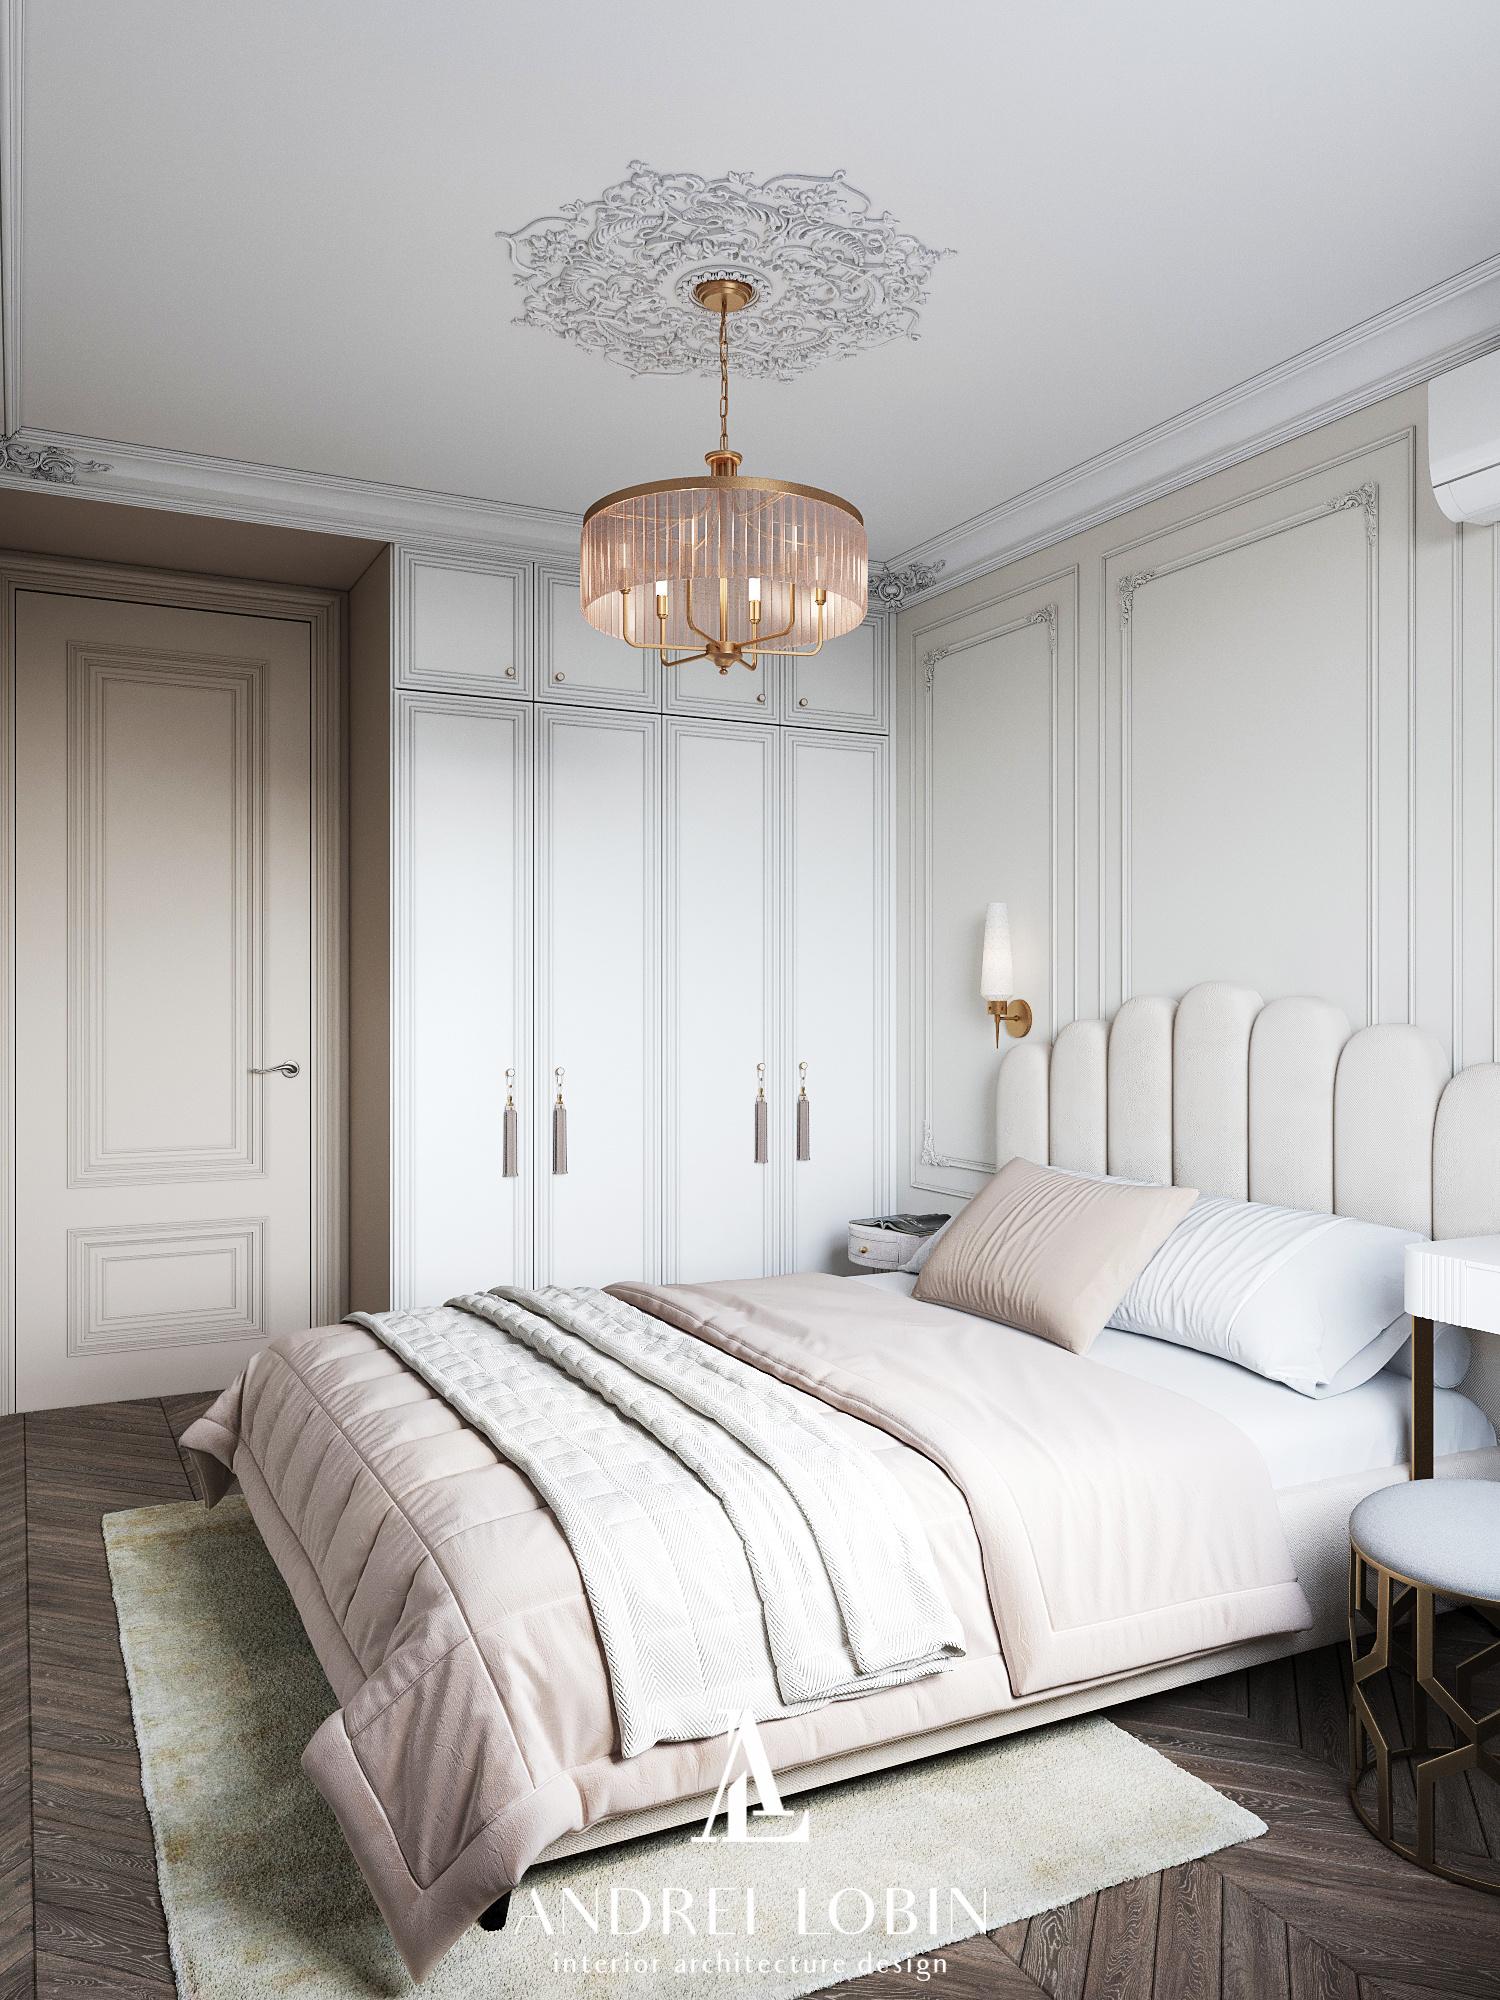 Интерьер спальни с аркой и светильниками над кроватью в классическом стиле